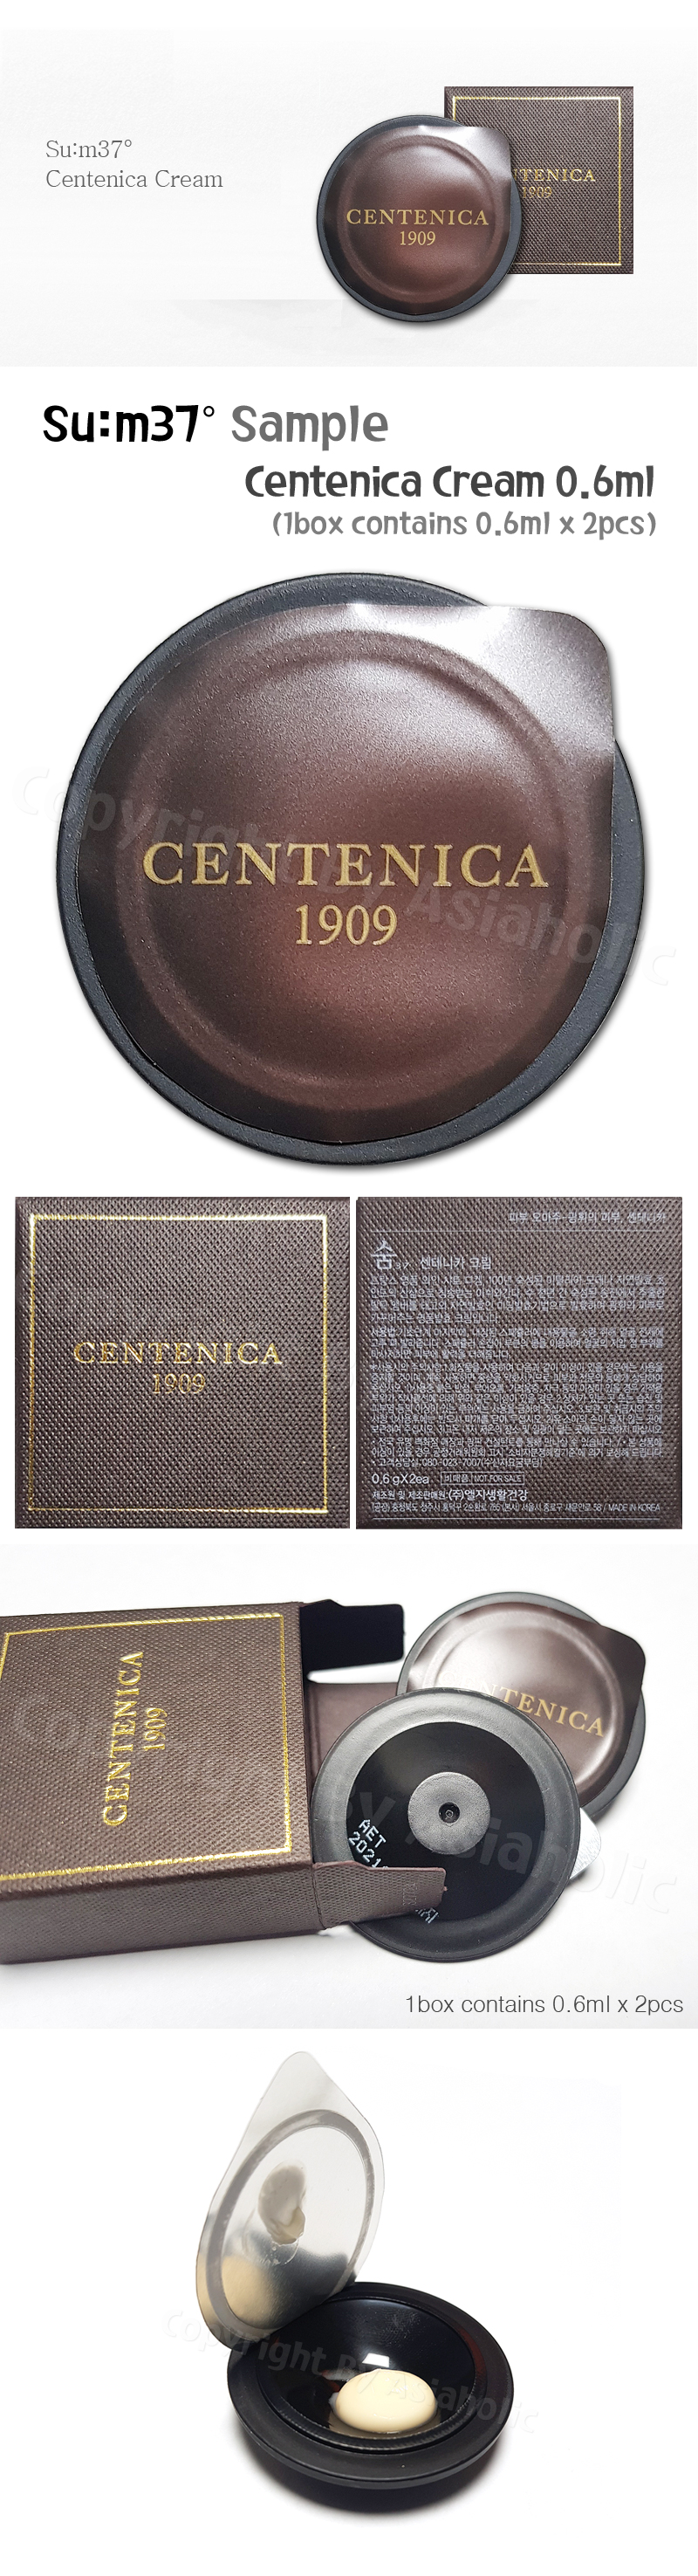 SU:M37 Centenica Cream 0.6ml (2pcs ~ 20pcs) Premium Sample Sum37 Newest Version